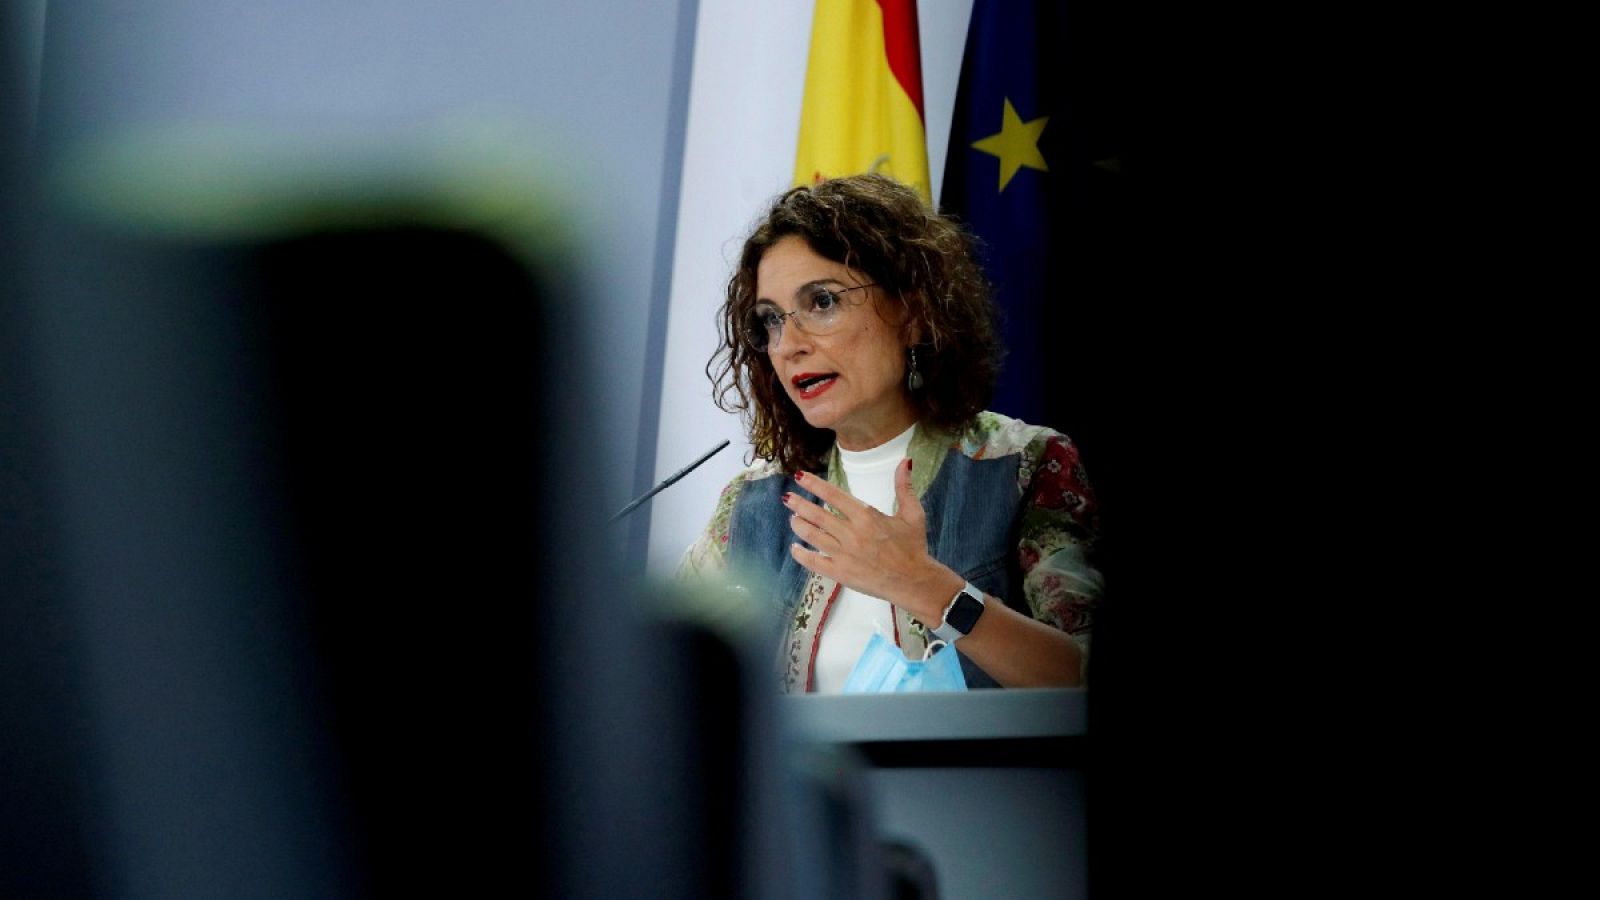 La ministra de Hacienda y portavoz del Gobierno, María Jesús Montero, ofrece una rueda de prensa tras el Consejo de Ministros celebrado este martes